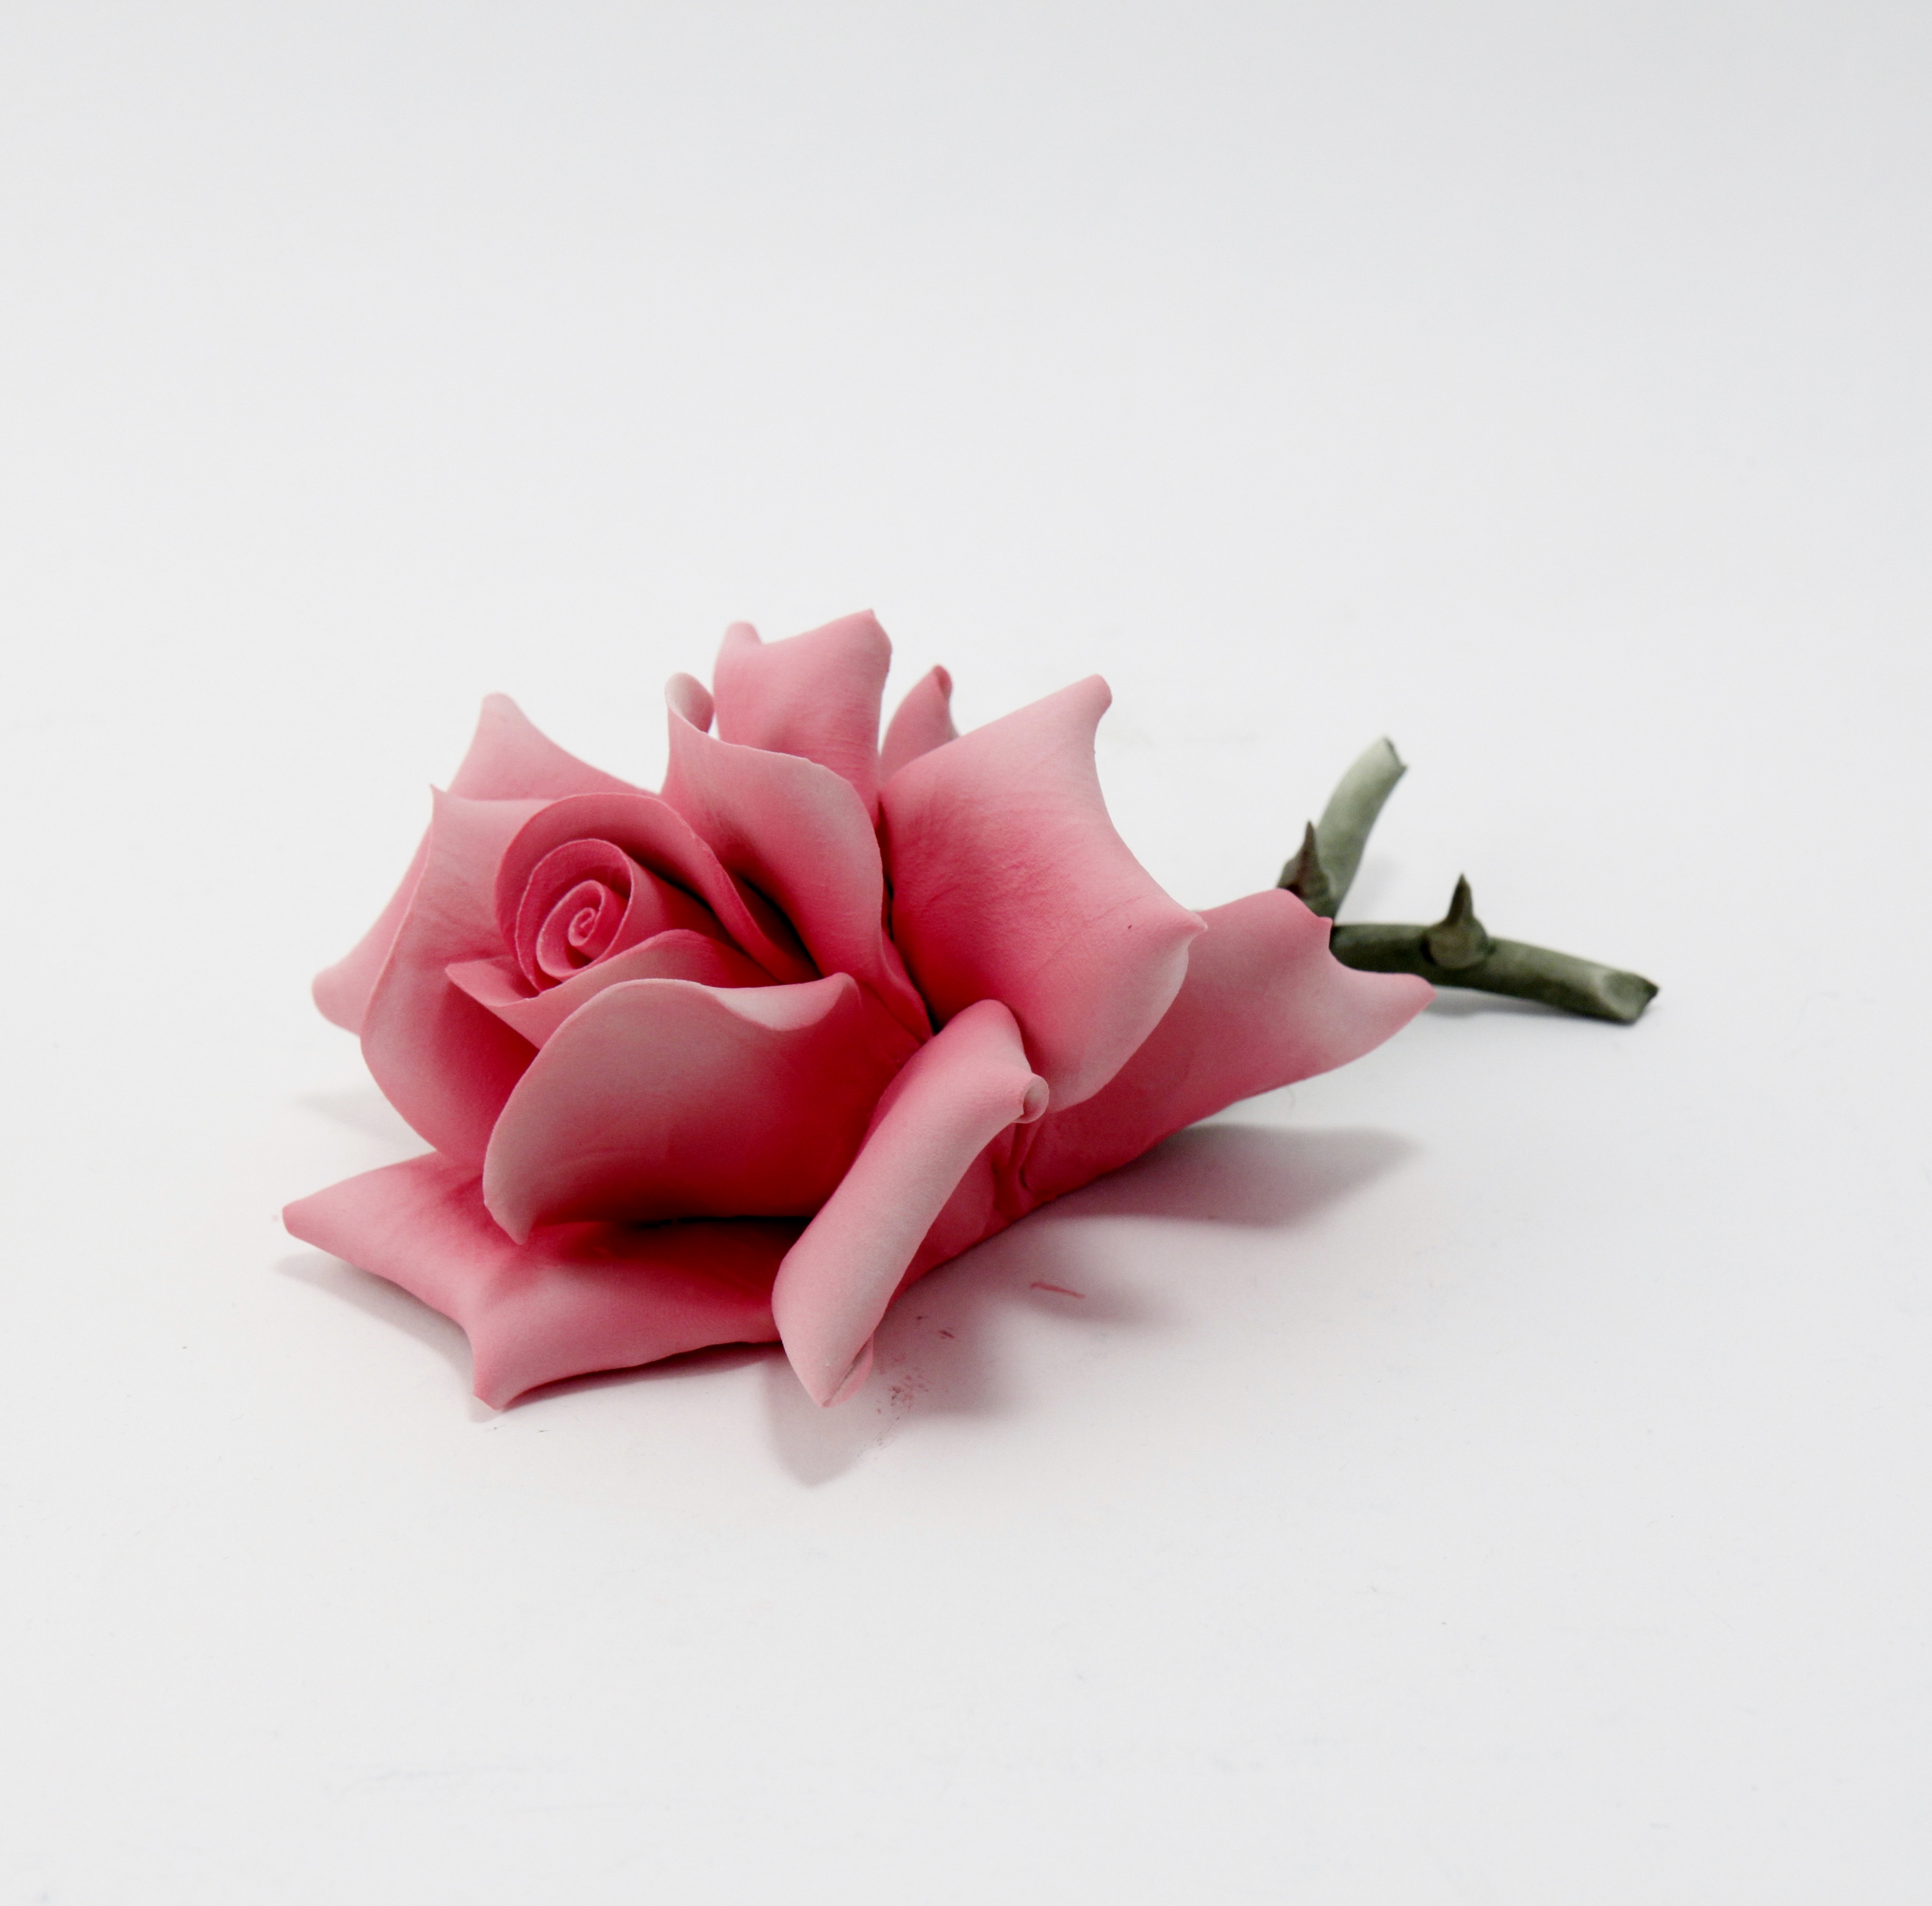 Rosa Colore Rosa by Dea Capodimonte